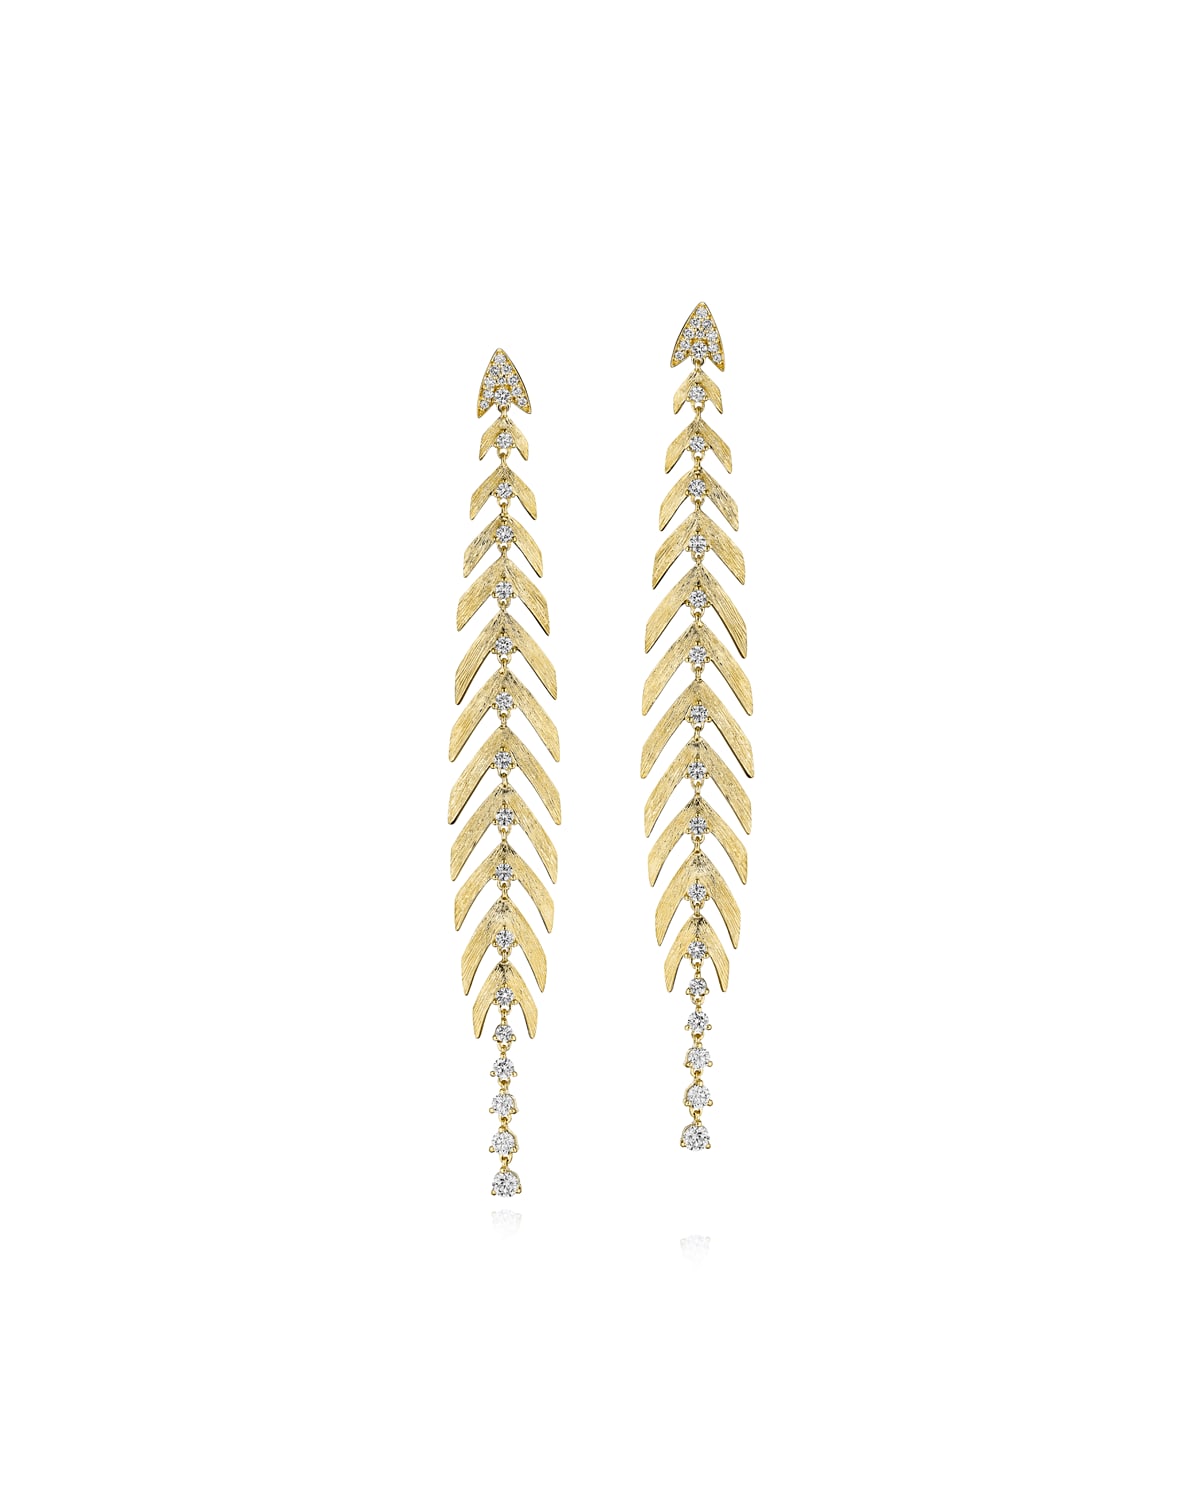 Hueb Bahia 18k Gold Linear Diamond Earrings